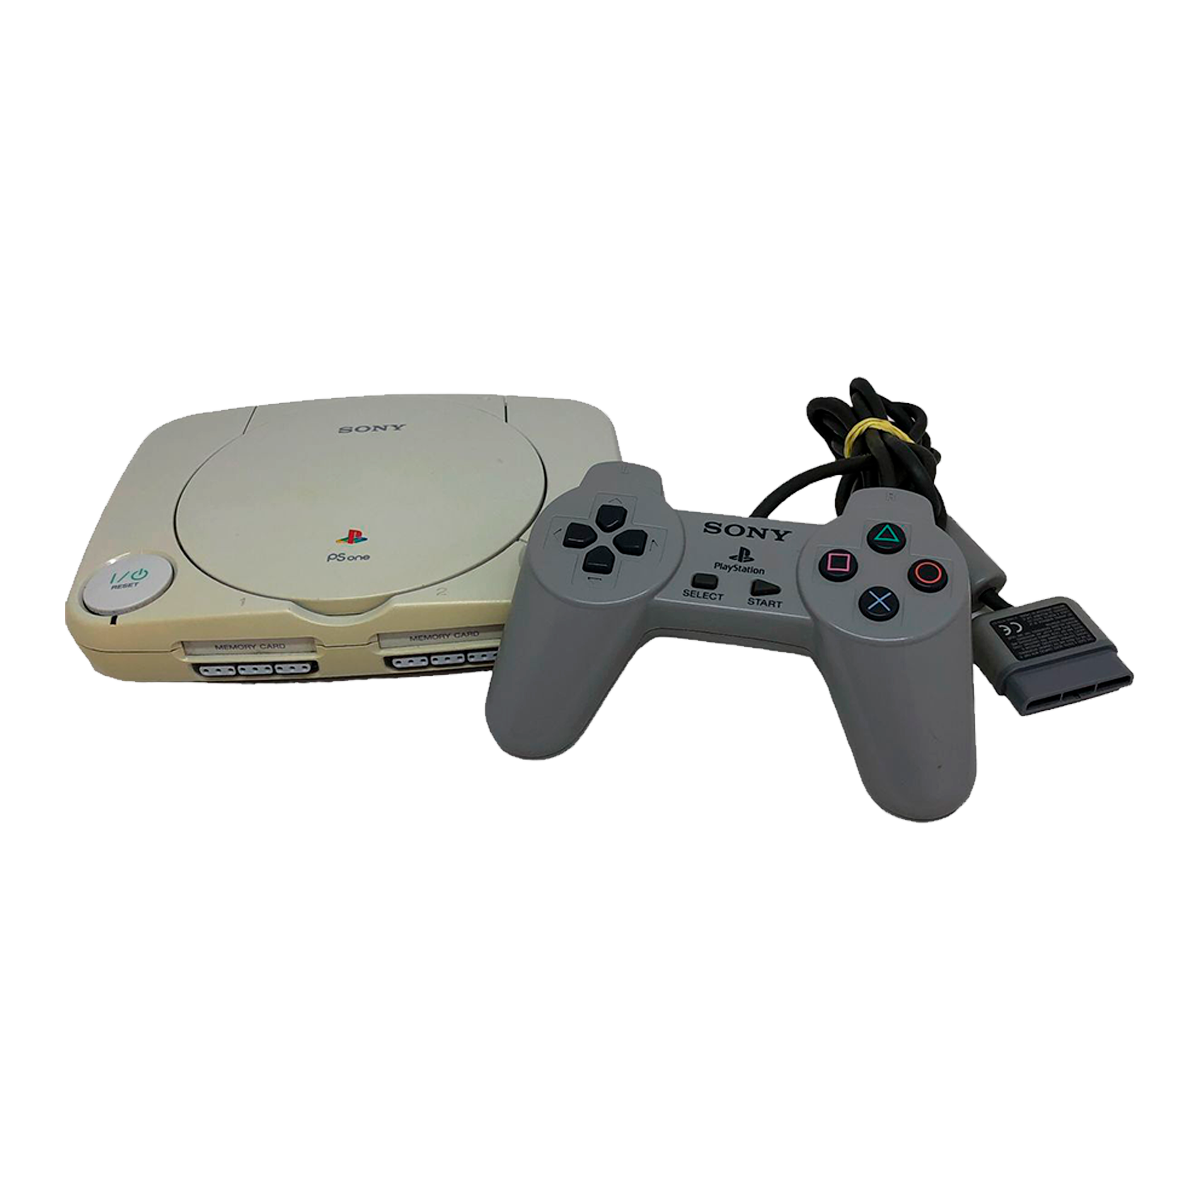 Console PlayStation 4 Pro 1TB - Sony - MeuGameUsado